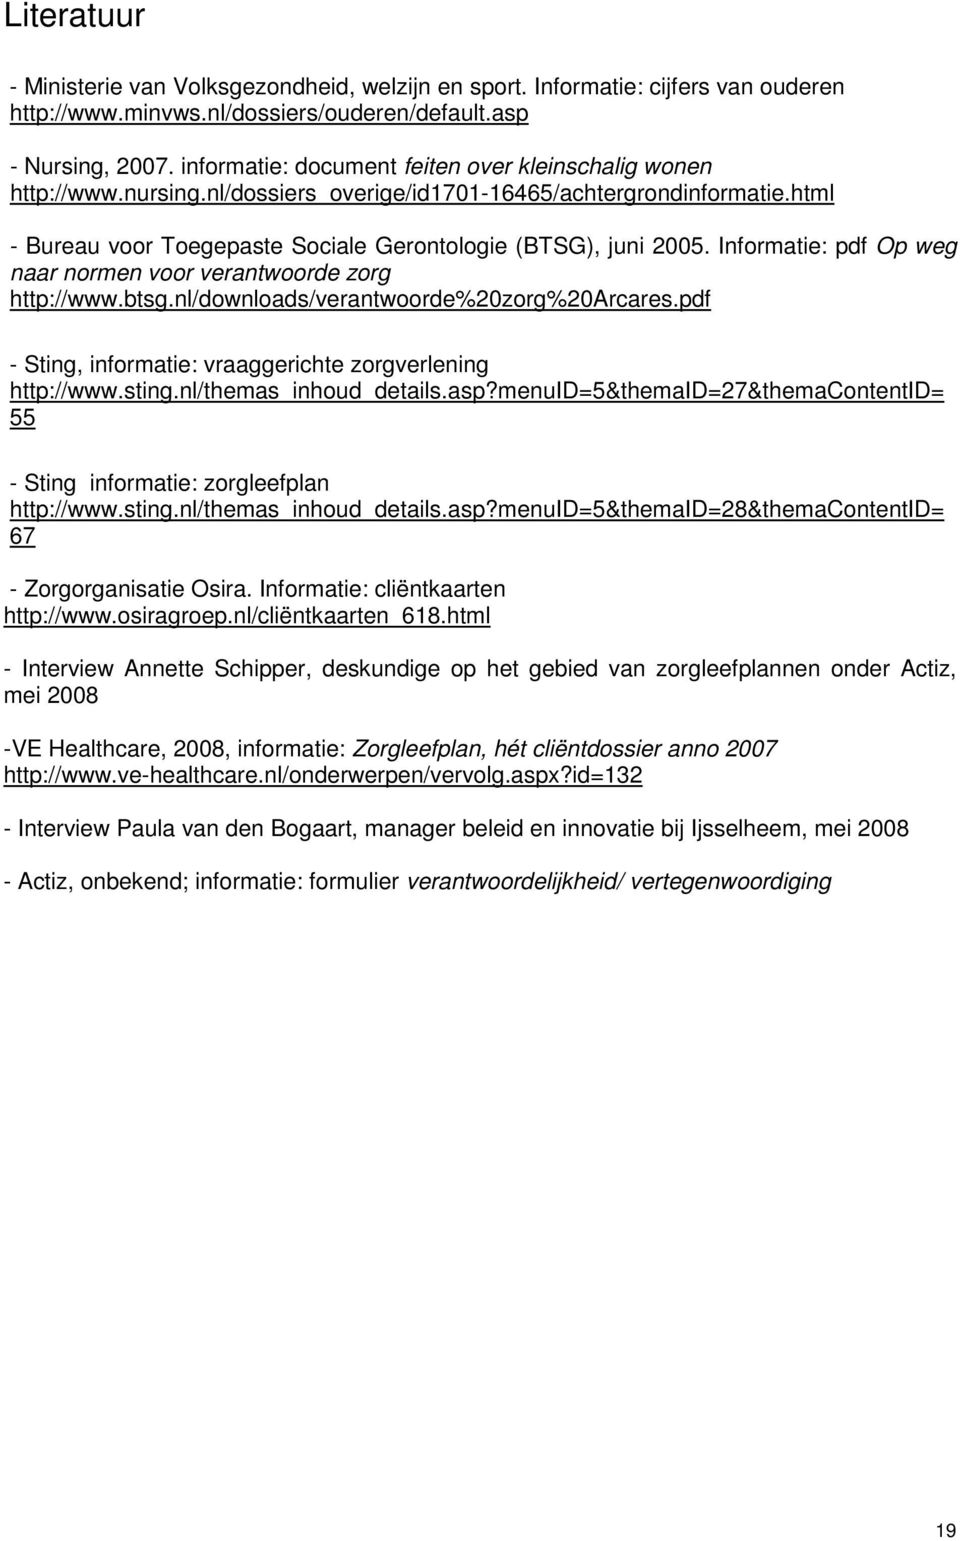 Informatie: pdf Op weg naar normen voor verantwoorde zorg http://www.btsg.nl/downloads/verantwoorde%20zorg%20arcares.pdf - Sting, informatie: vraaggerichte zorgverlening http://www.sting.